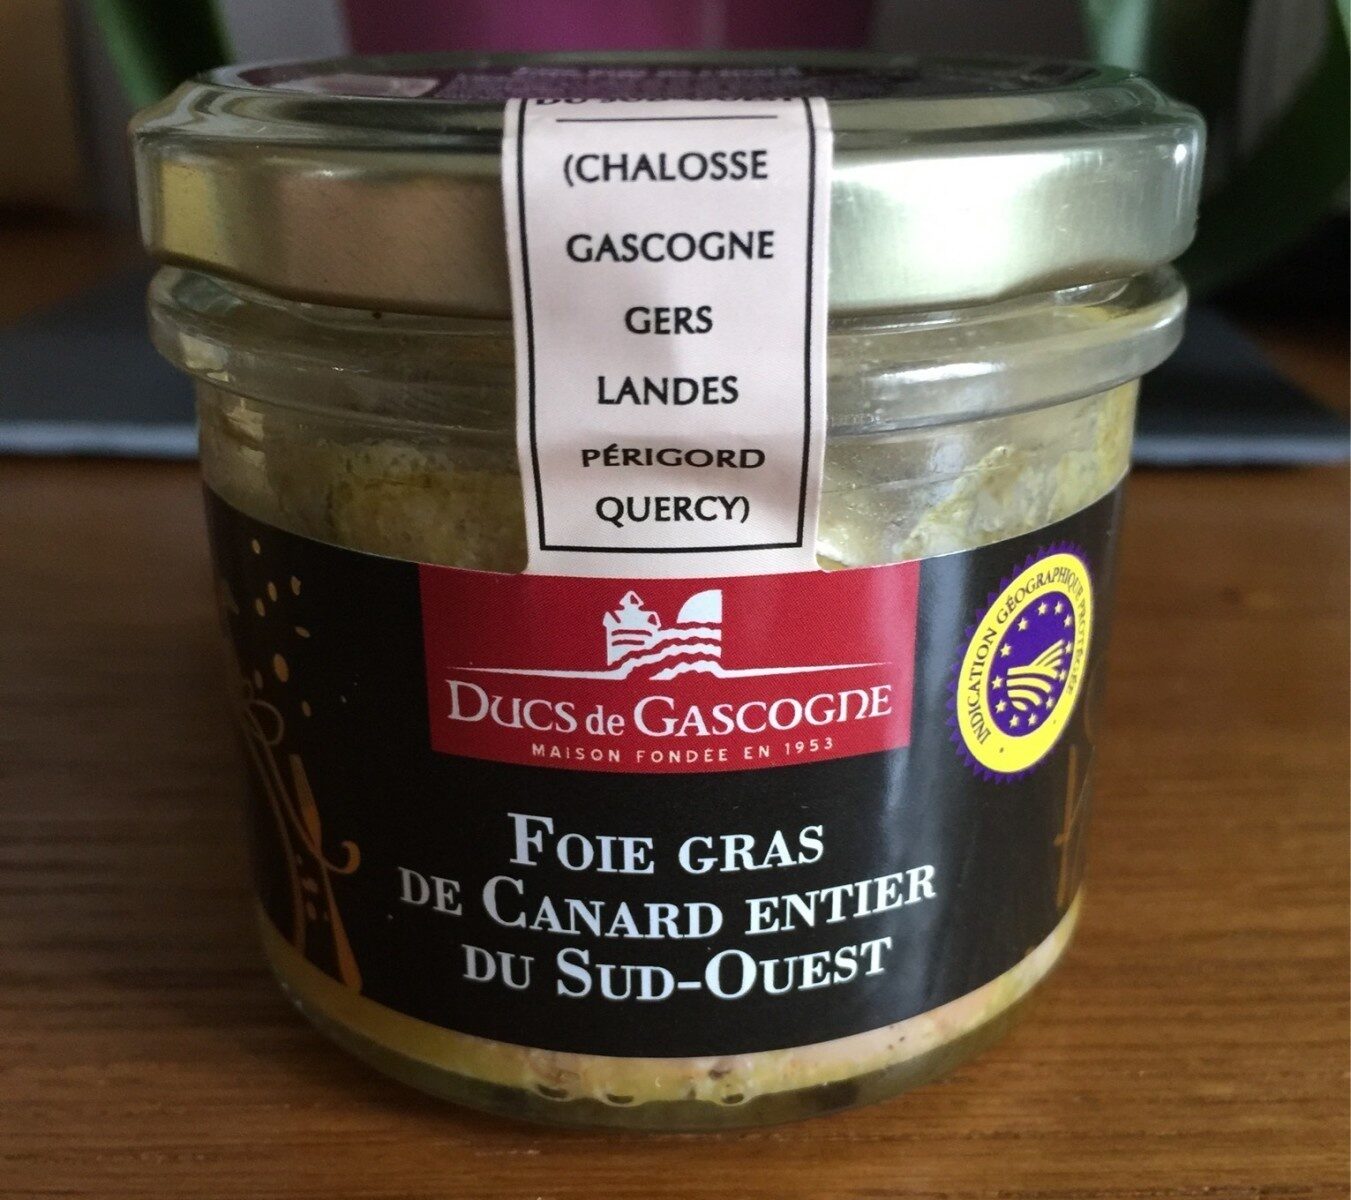 Foie gras de cabard entier du dud ouest - Product - fr